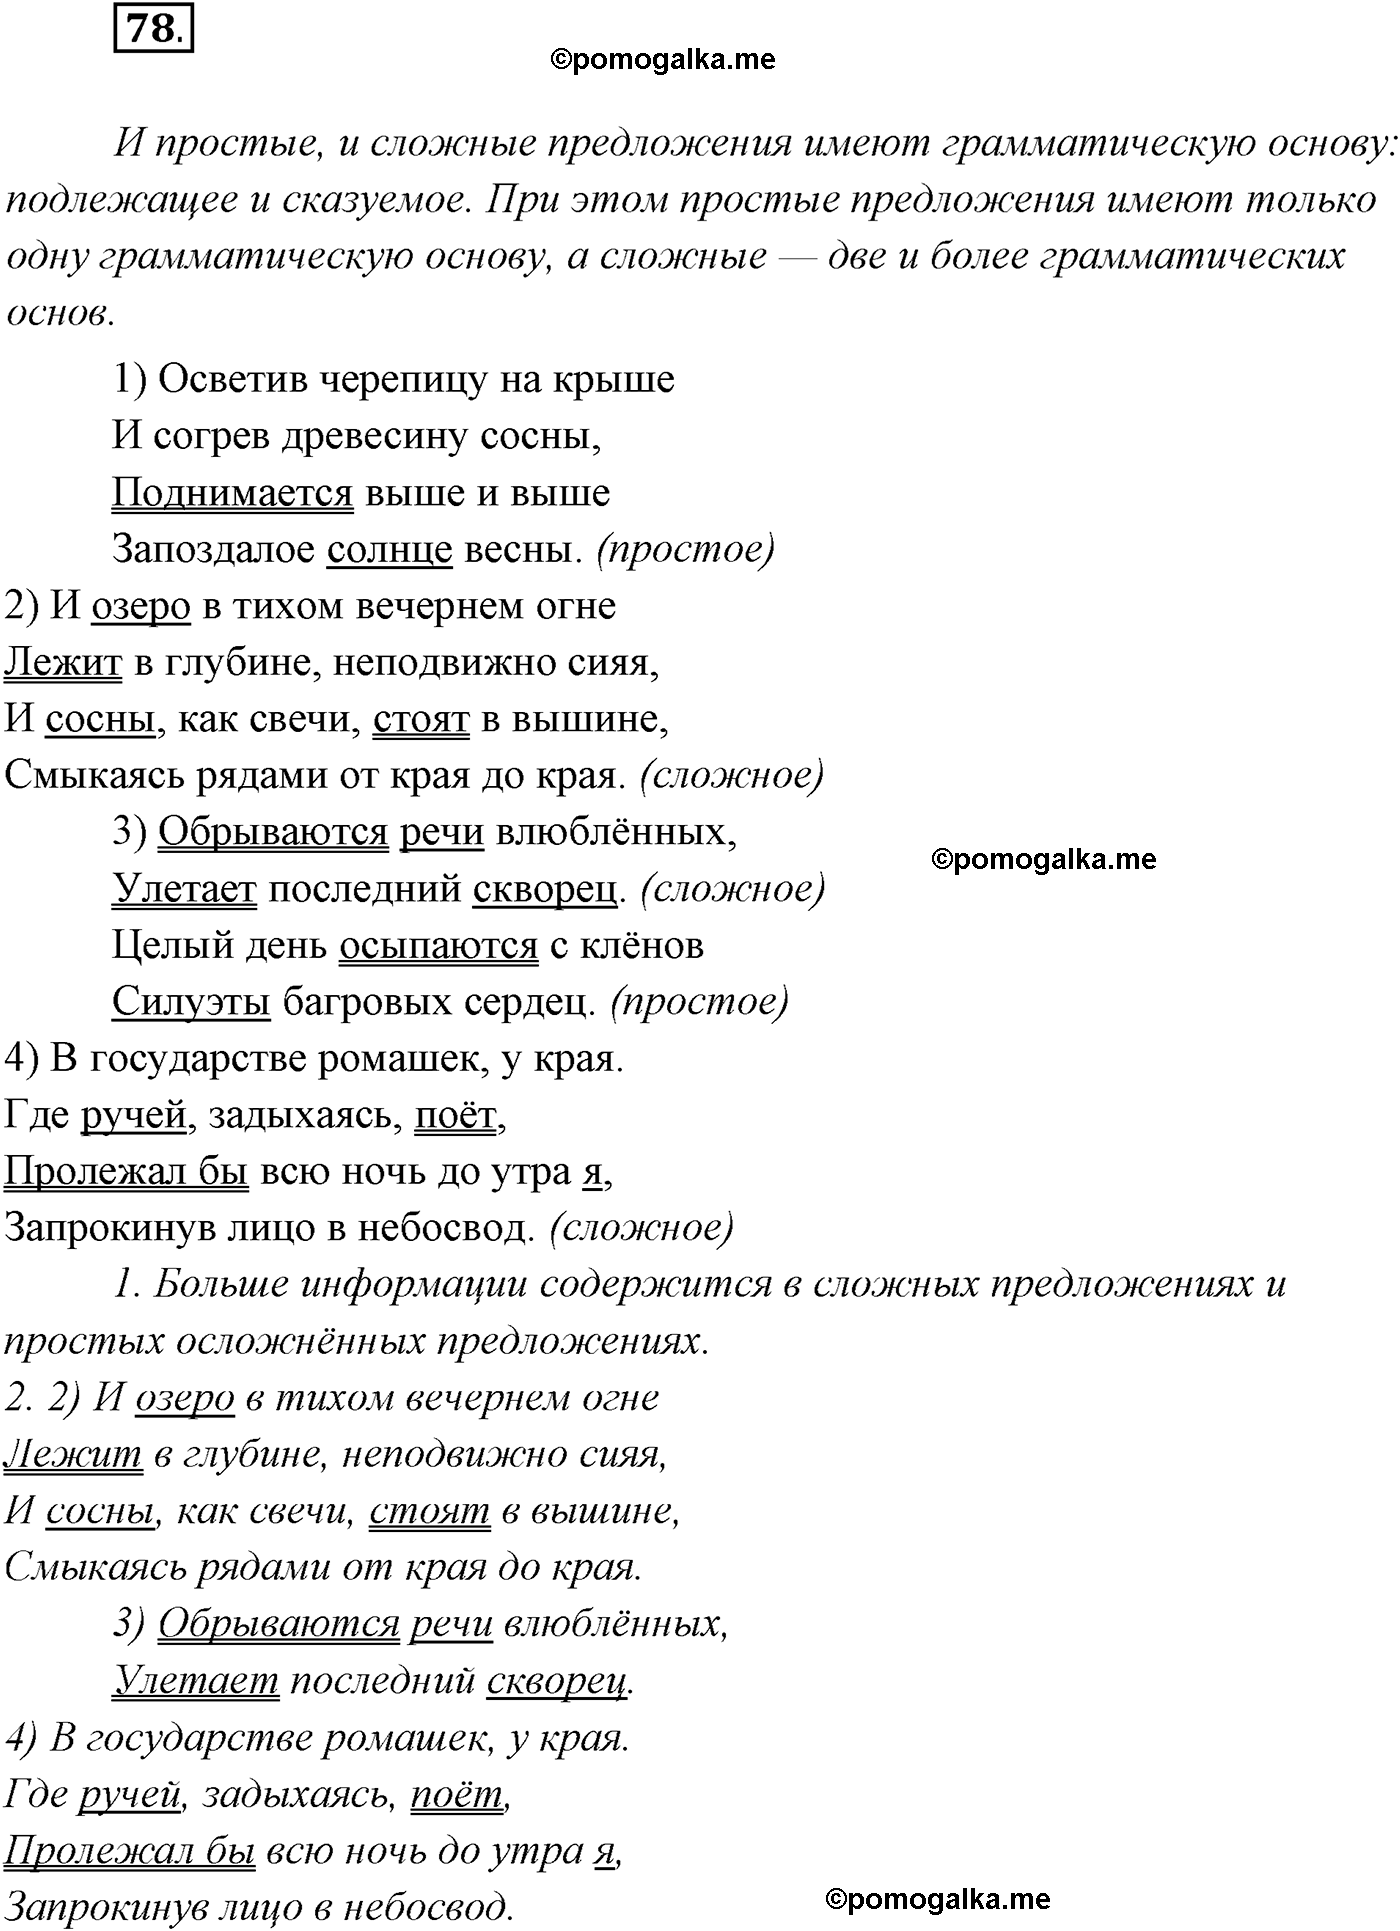 упражнение №78 русский язык 9 класс Рыбченкова, Александрова